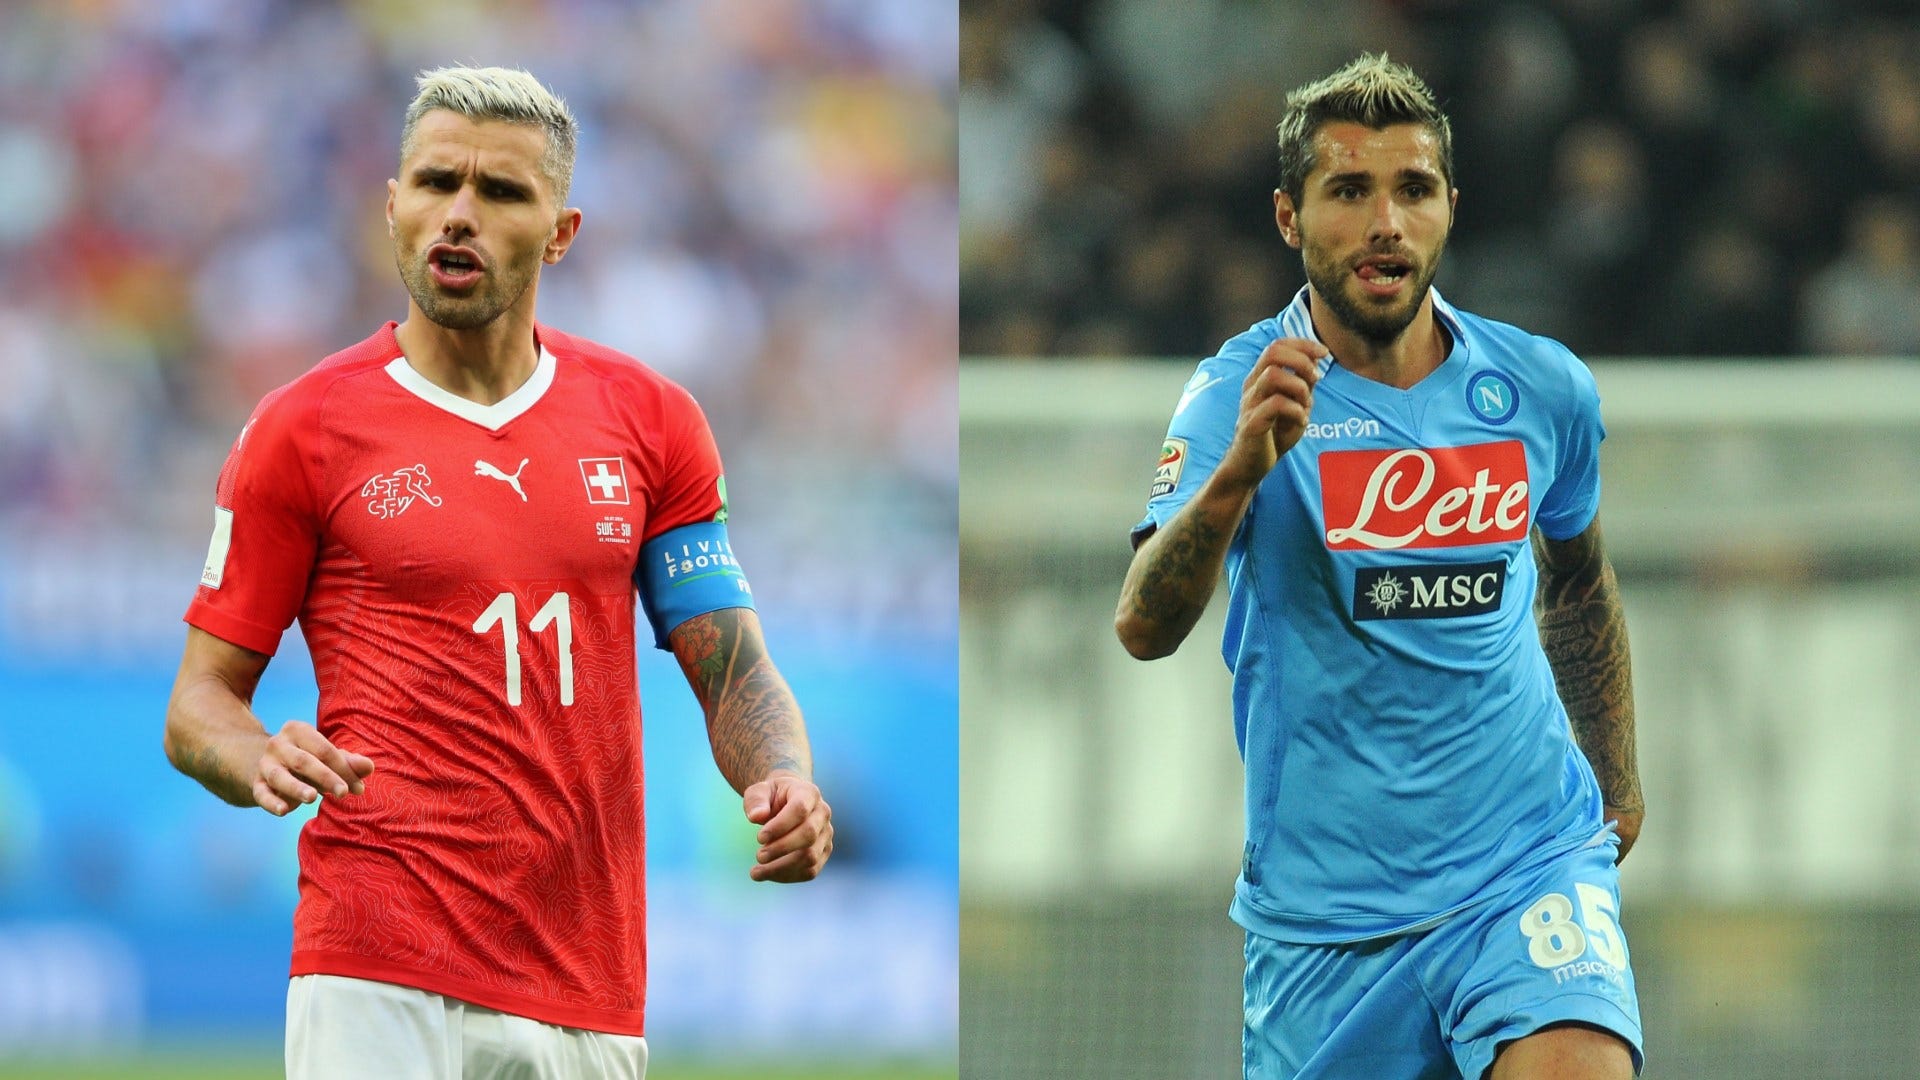 Behrami entre Italia y Suiza: Casos nacionales, récord de 4 Mundiales y Napoli ‘odi et amo’